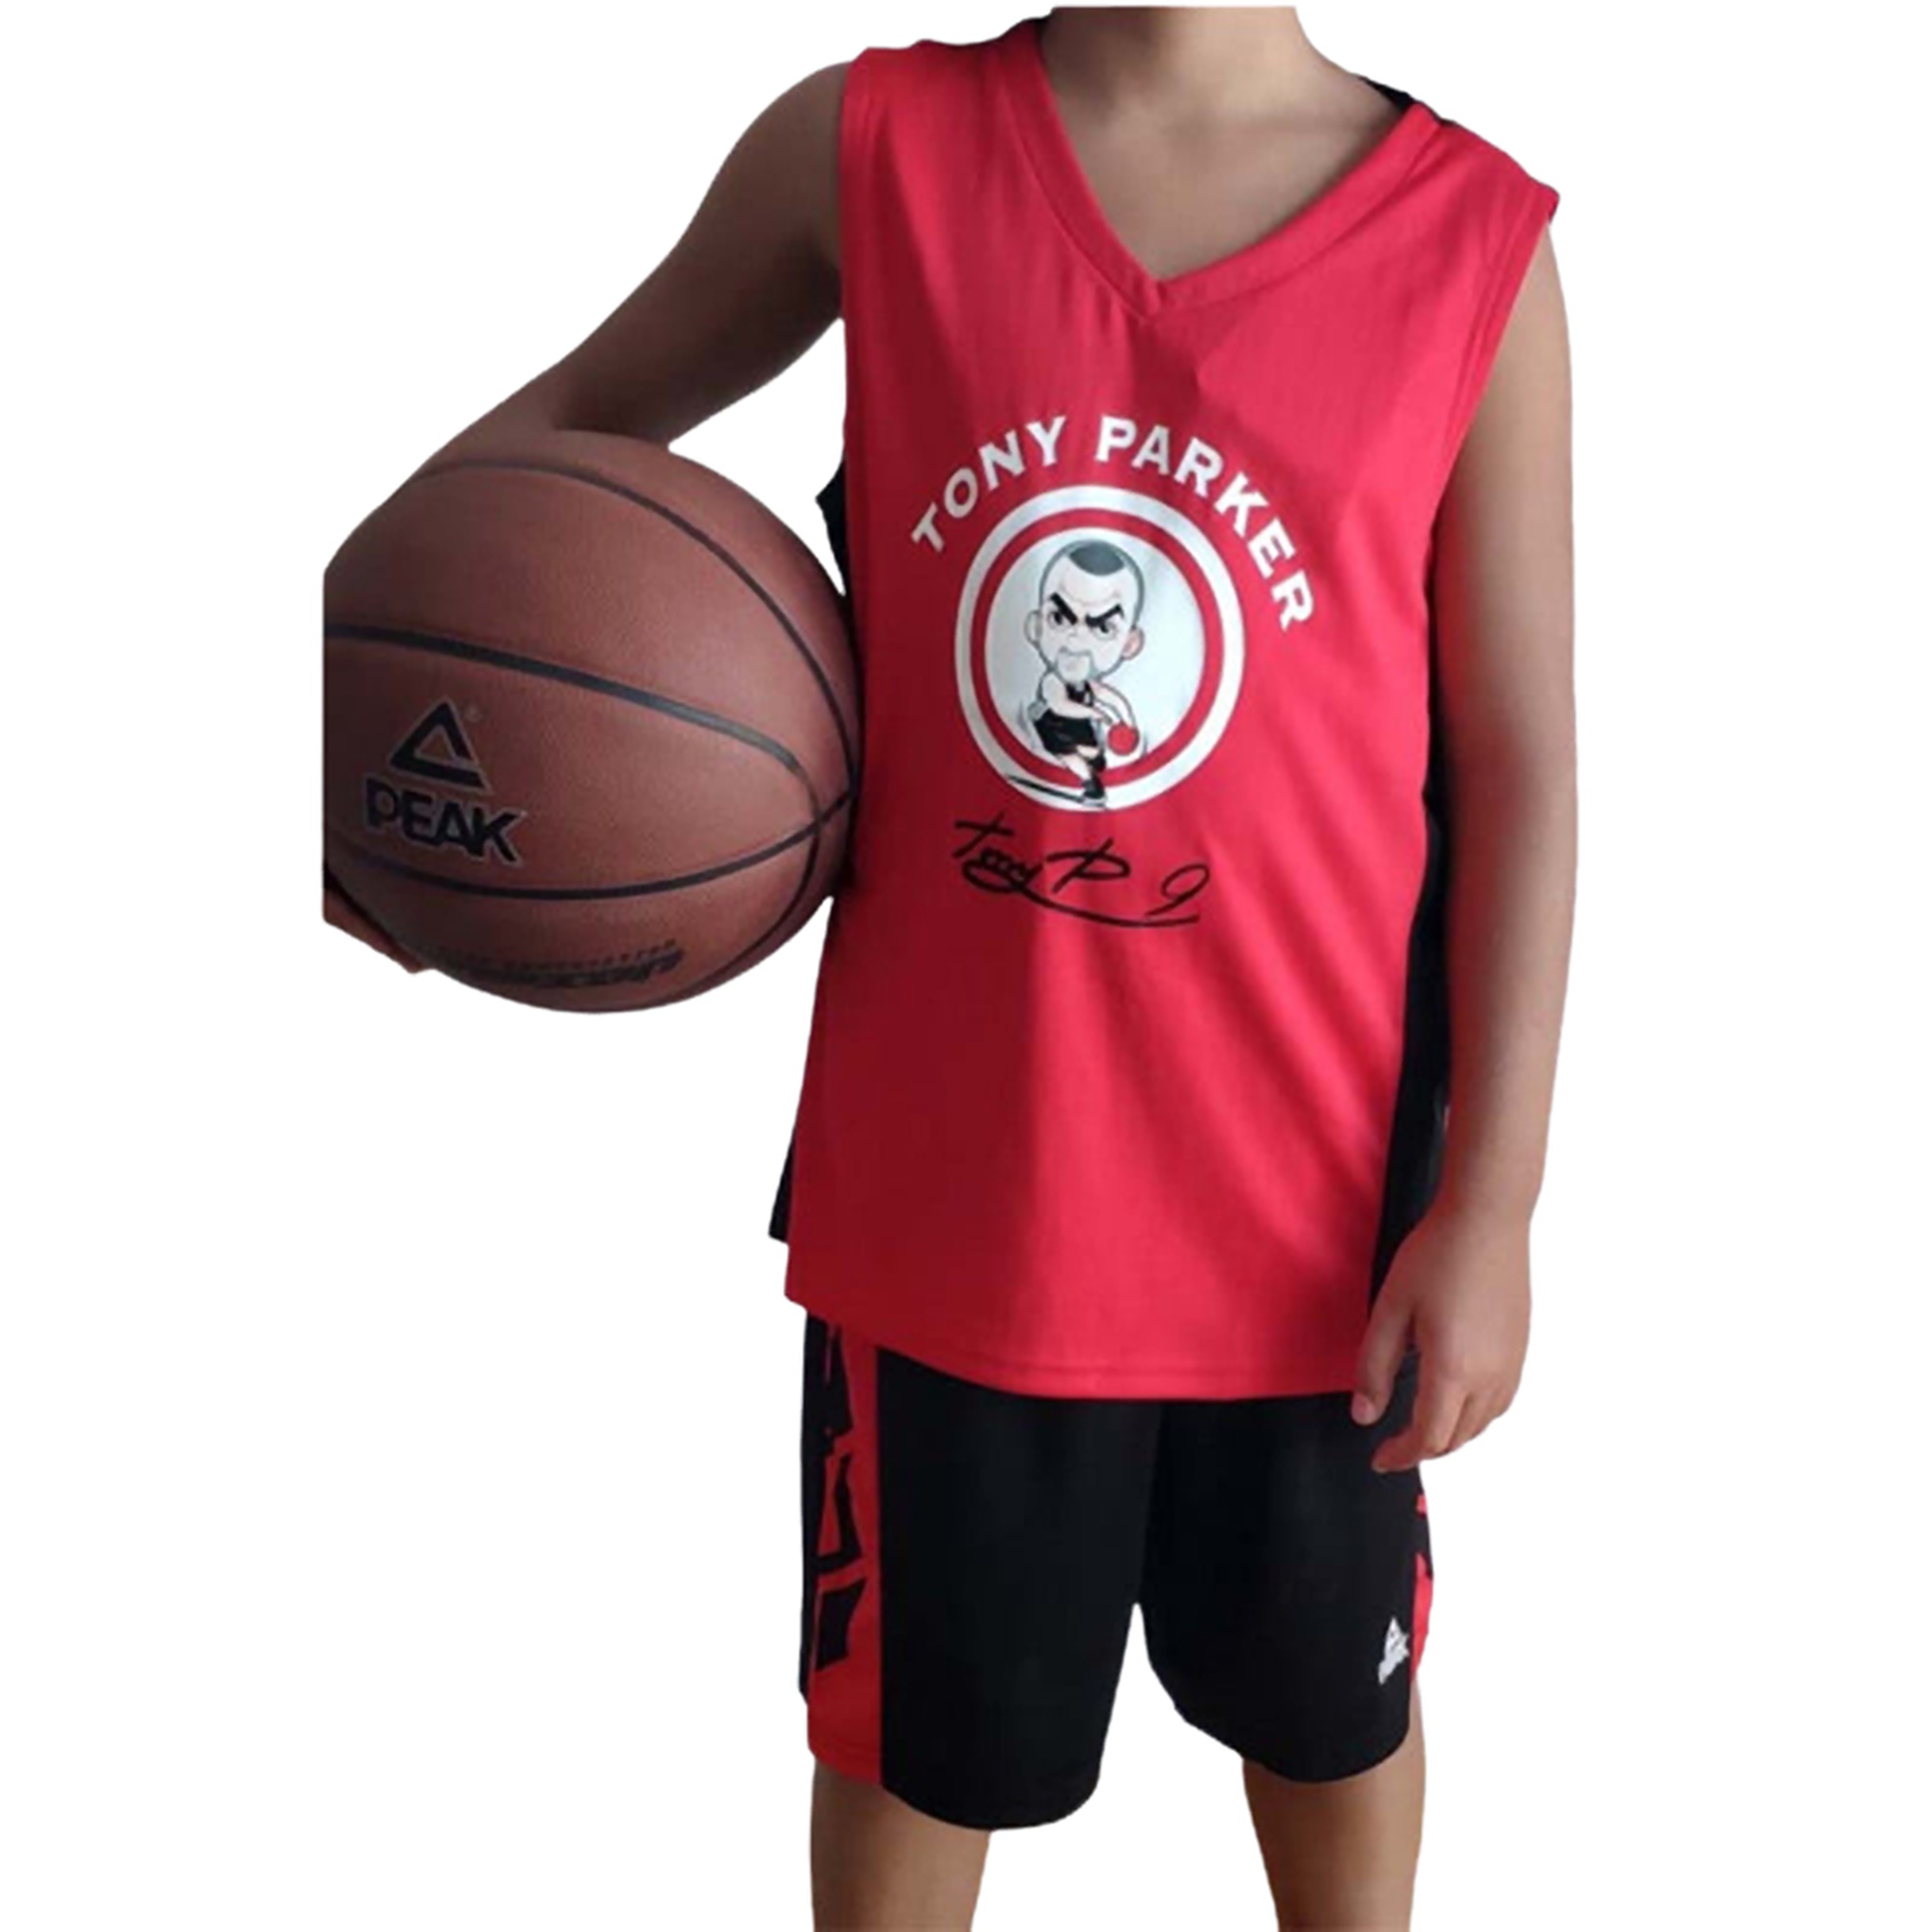 Camiseta roja jugadores de baloncesto niño